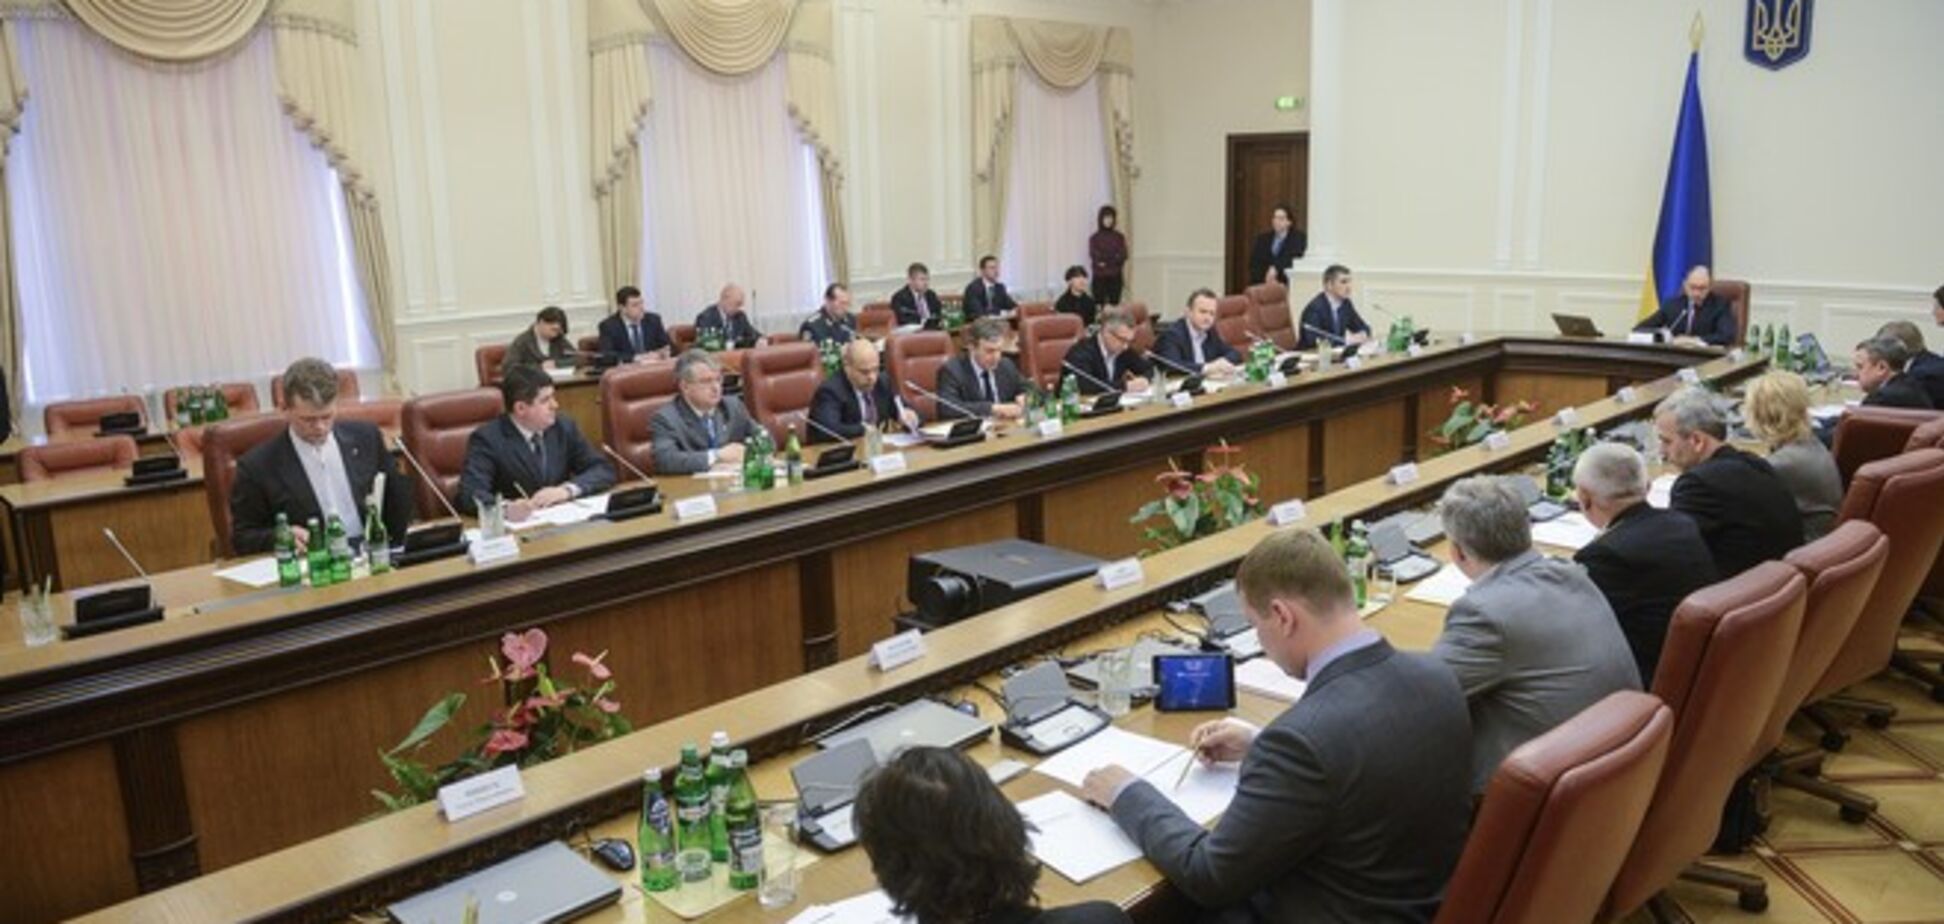 Кабмин включил в приватизационный список 164 объекта рыночной стоимостью 15 млрд грн